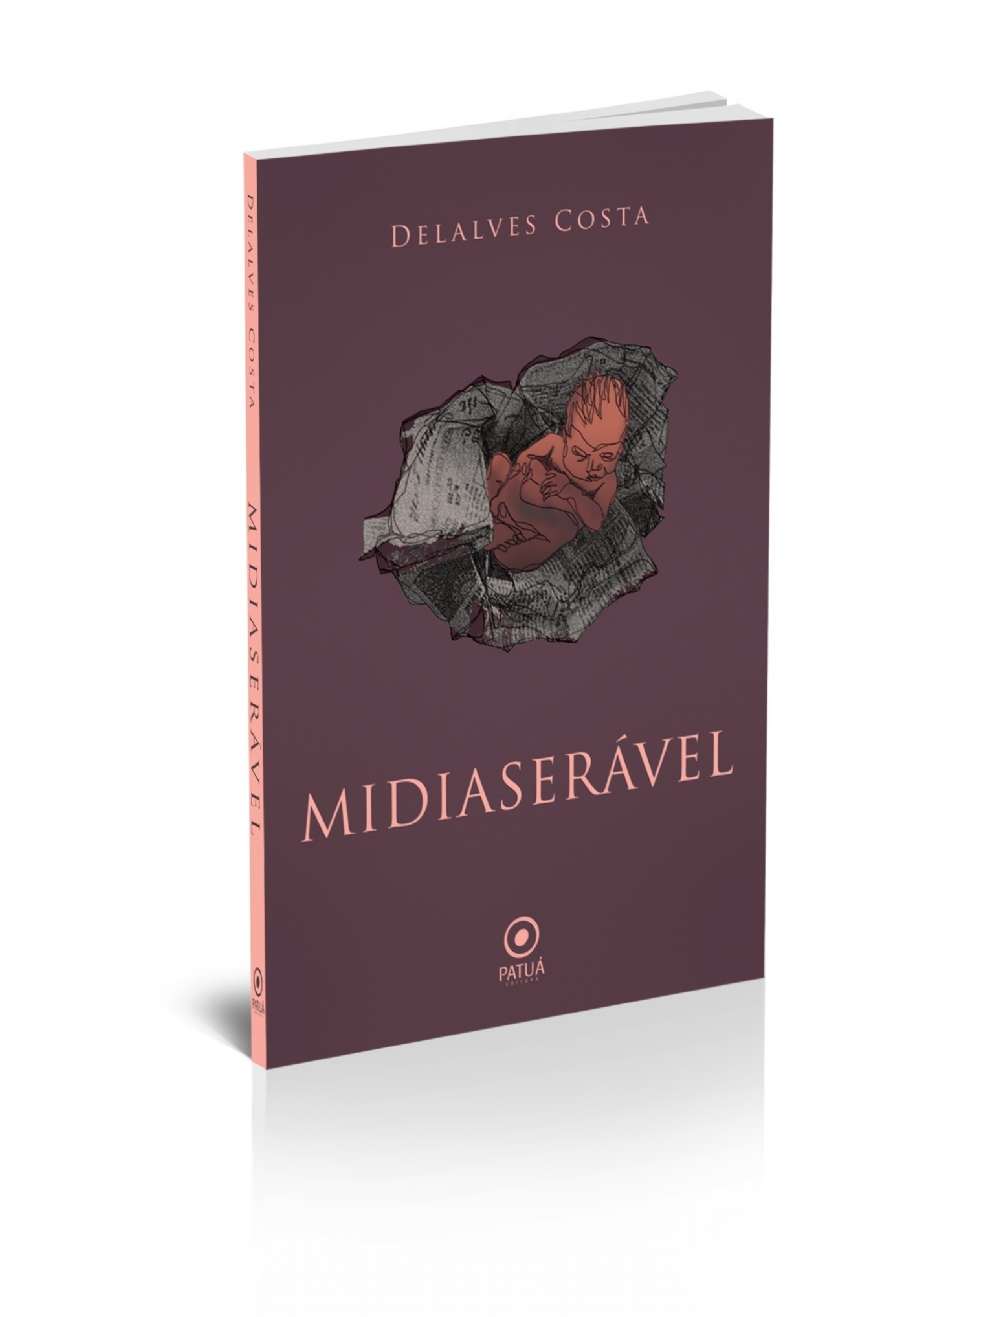 1 CAPA Midiaserável 2020 Editora Patuá - A reinvenção do caos na poesia de Delalves Costa | por José Eduardo Degrazia